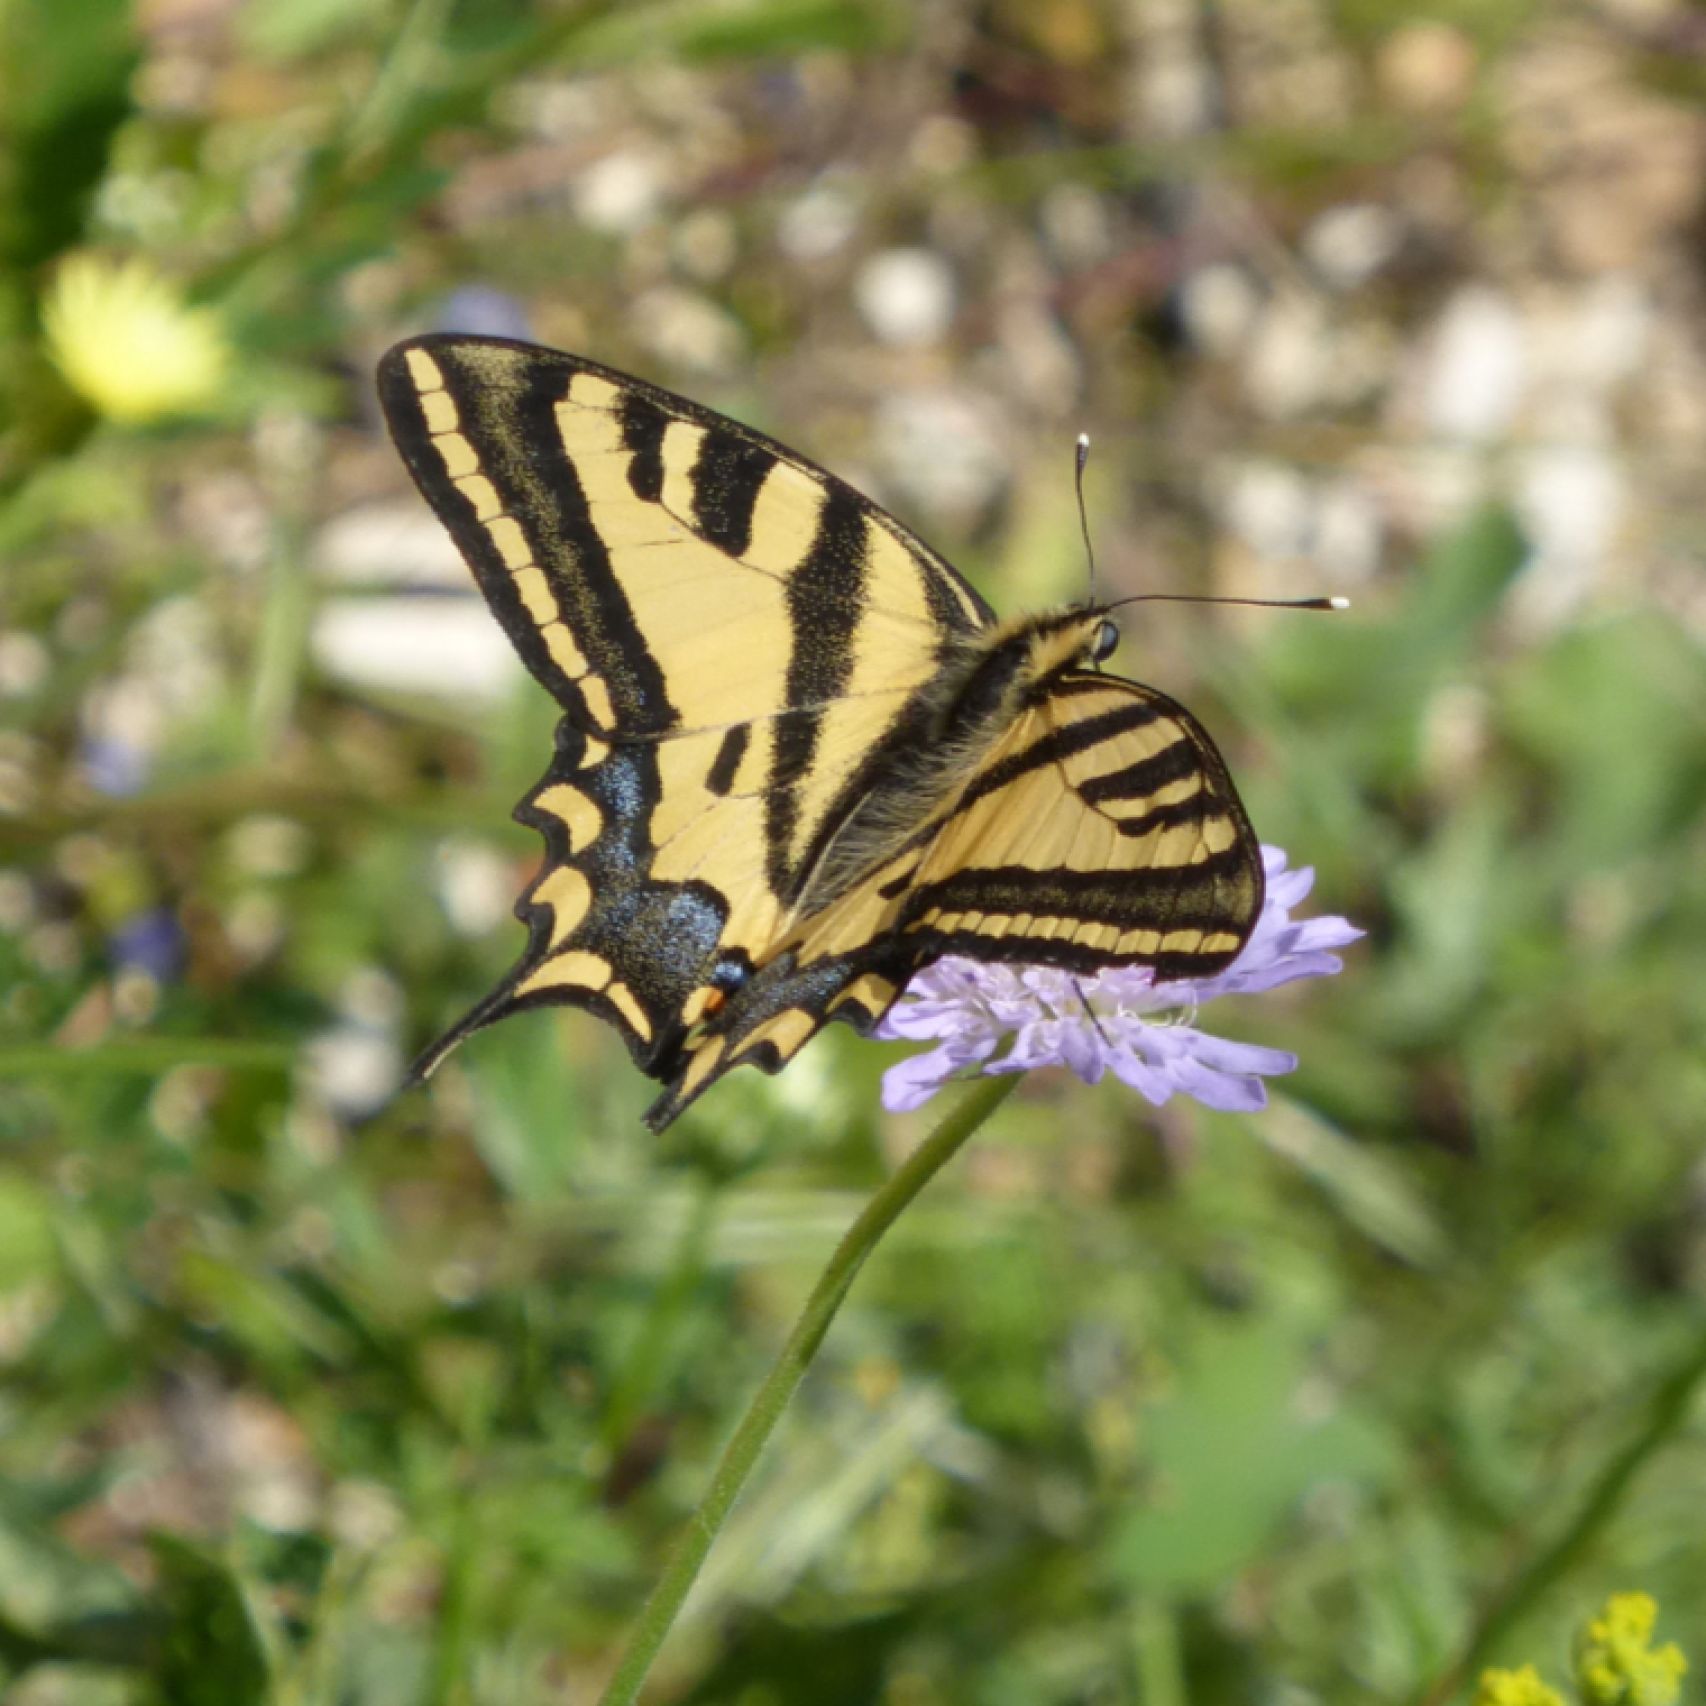 Corfu swallowtail